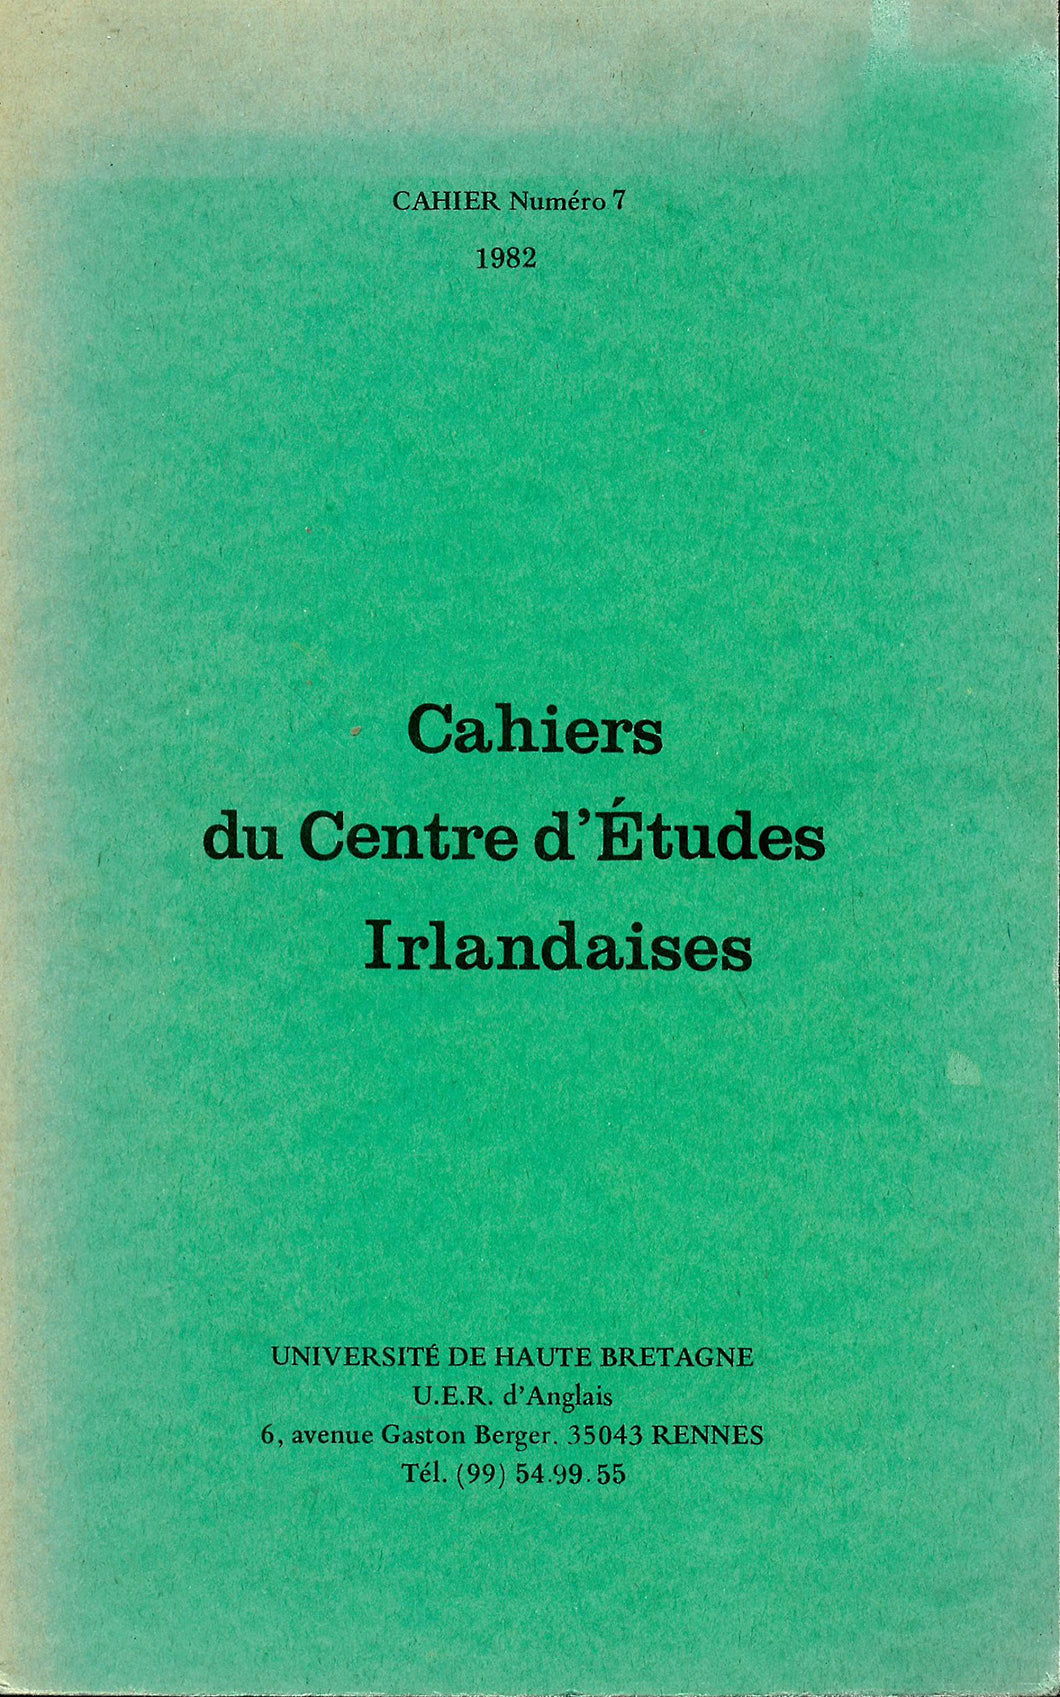 Cahiers du Centre d'Études Irlandaises - Cahier Numéro 7, 1982